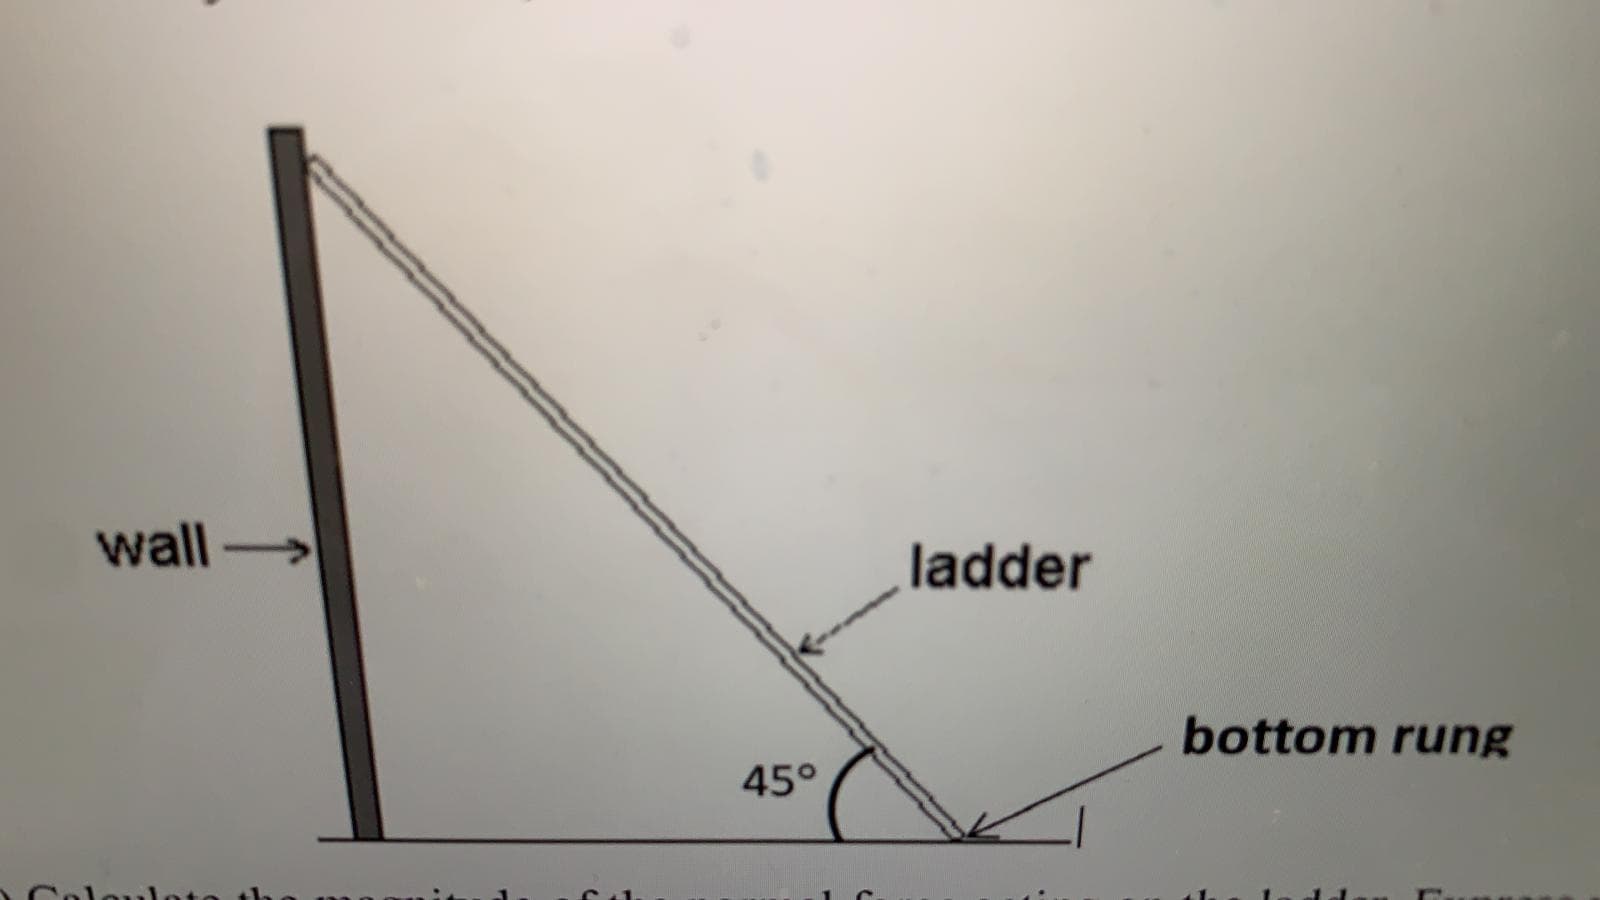 wall
ladder
bottom rung
45°
